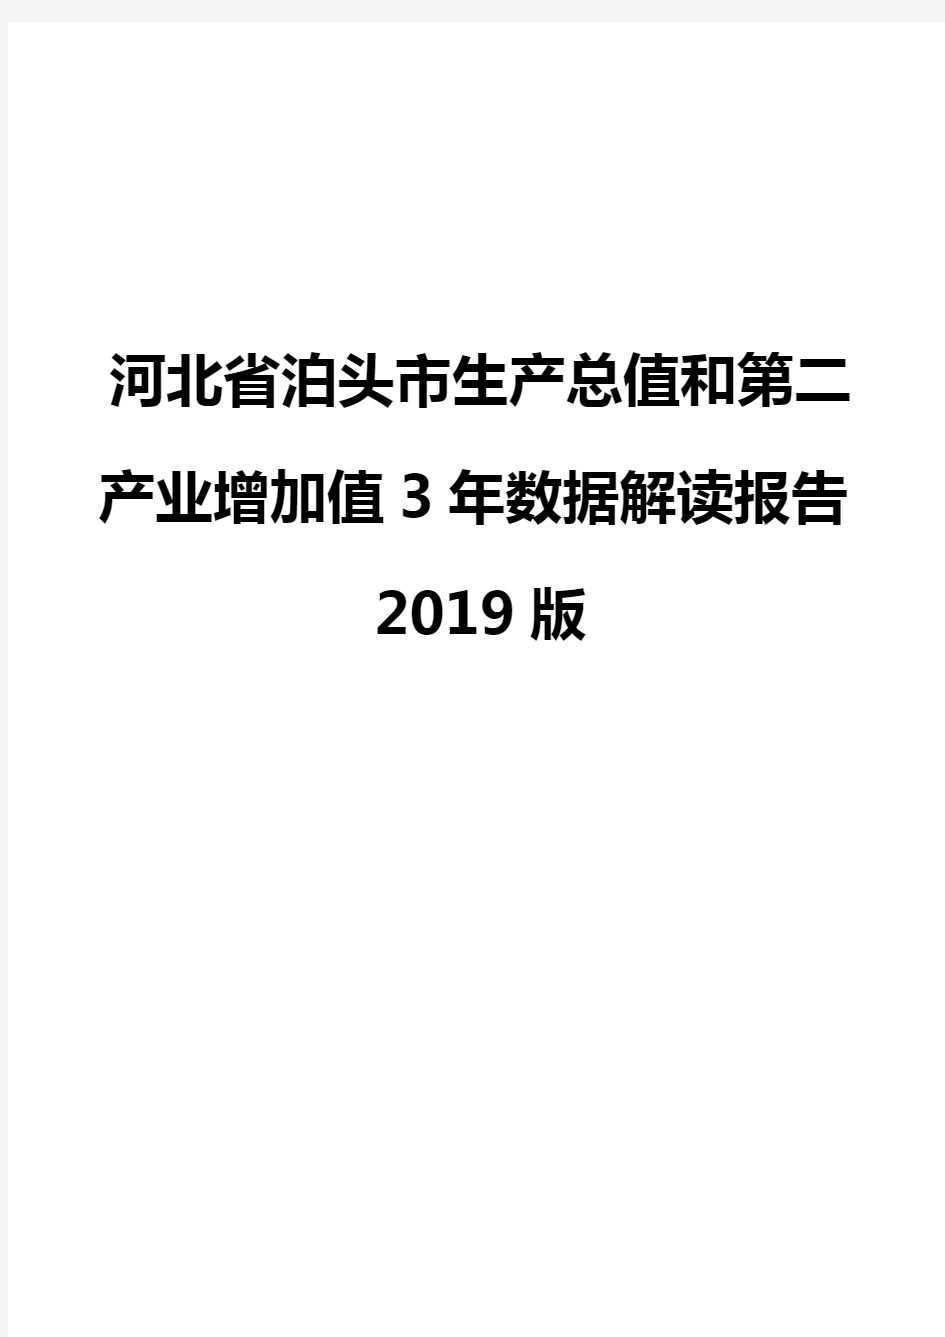 河北省泊头市生产总值和第二产业增加值3年数据解读报告2019版